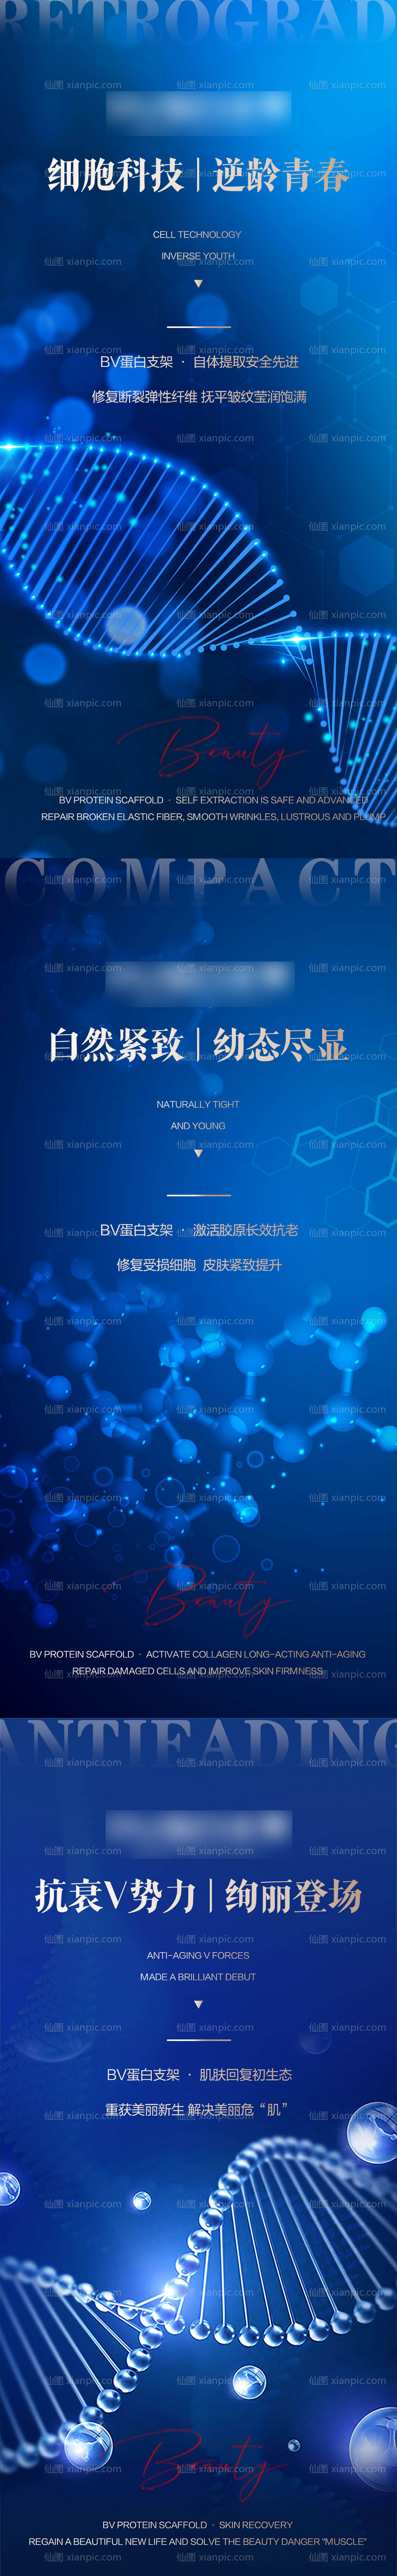 素材乐-Bv蛋白支架科技系列海报